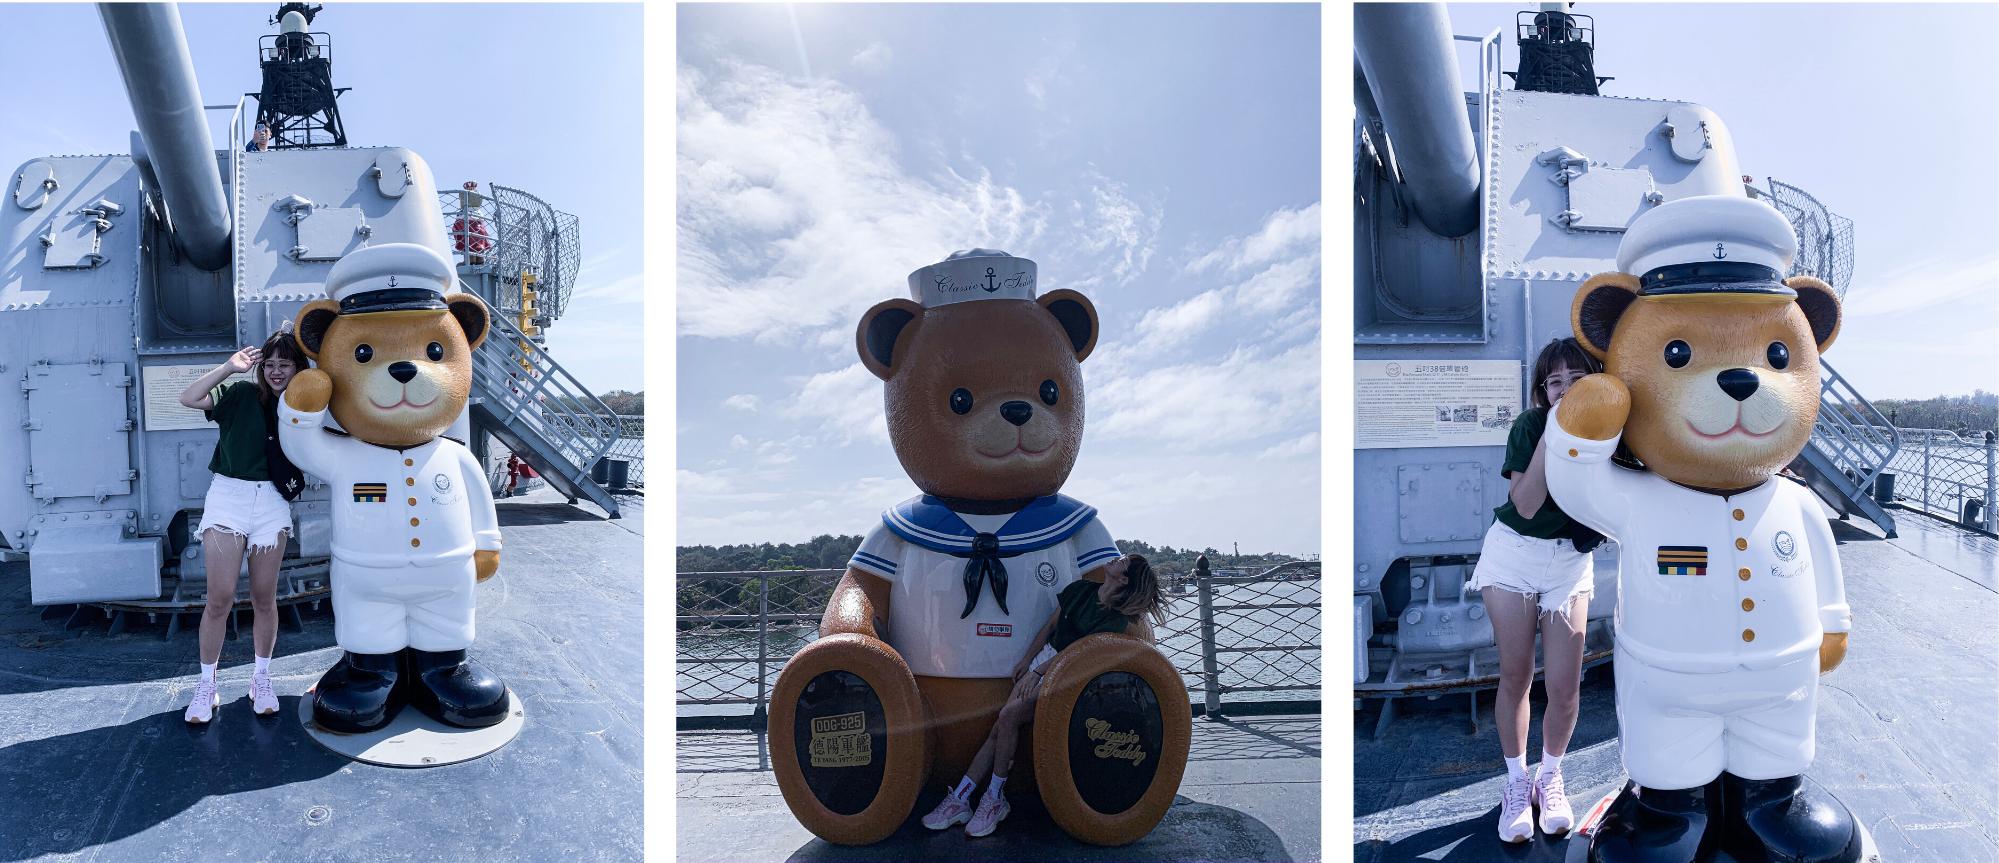 可愛的泰迪熊增添了船上的可愛與溫馨度